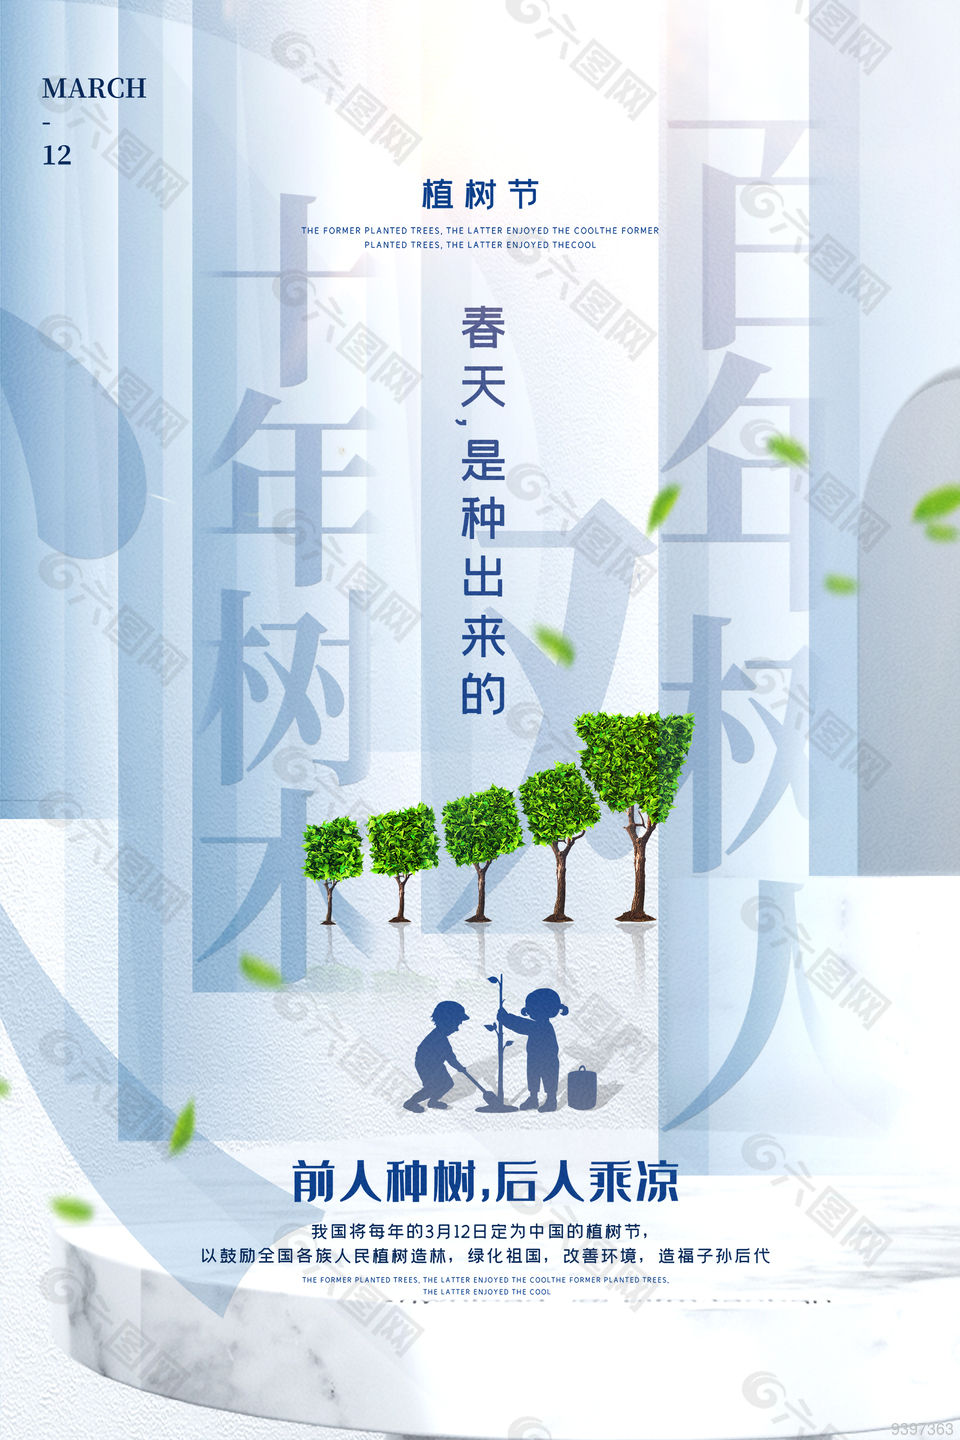 植树造林改善环境312植树节节日海报设计